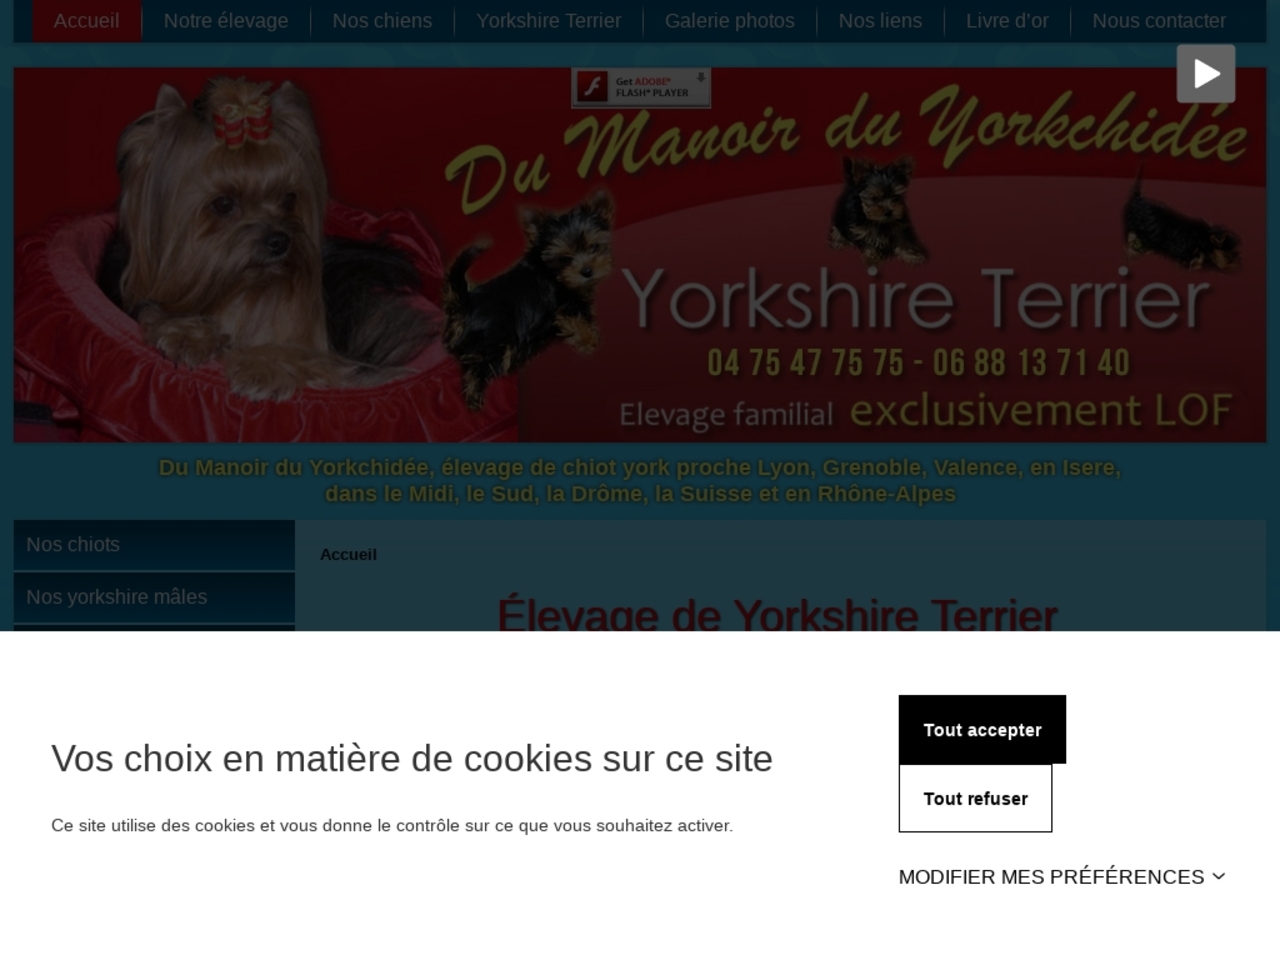 Elevage Yorkshire Terrier, tout ce qu'il faut savoir avant d'élever un yorkshire terrier